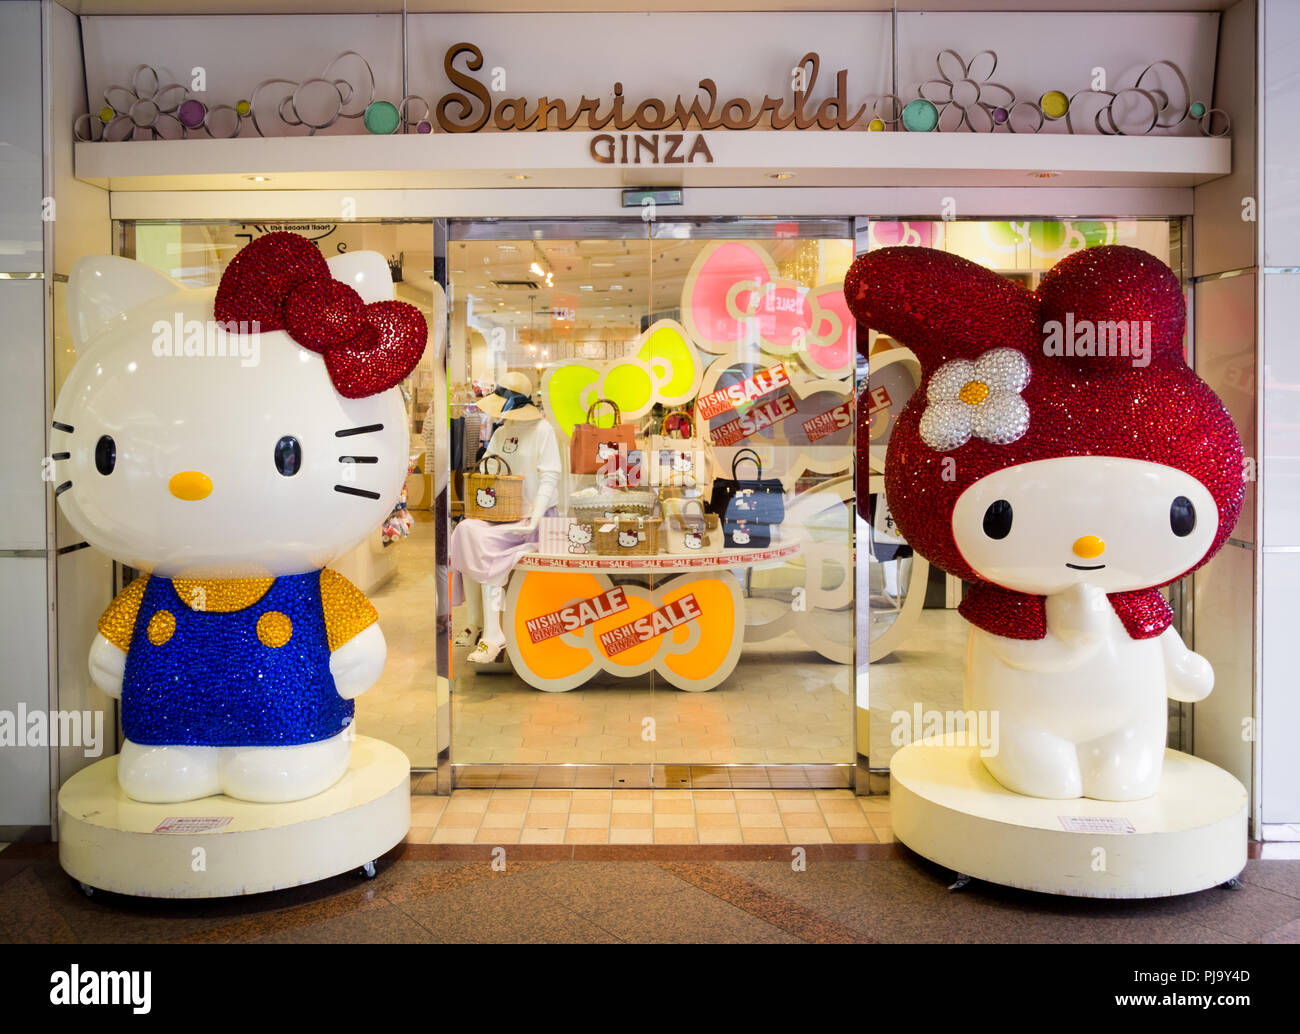 Hello Kitty und meine Melodie, zwei beliebte Sanrio Zeichen, an Sanrioworld Ginza in Ginza, Tokyo, Japan. Stockfoto